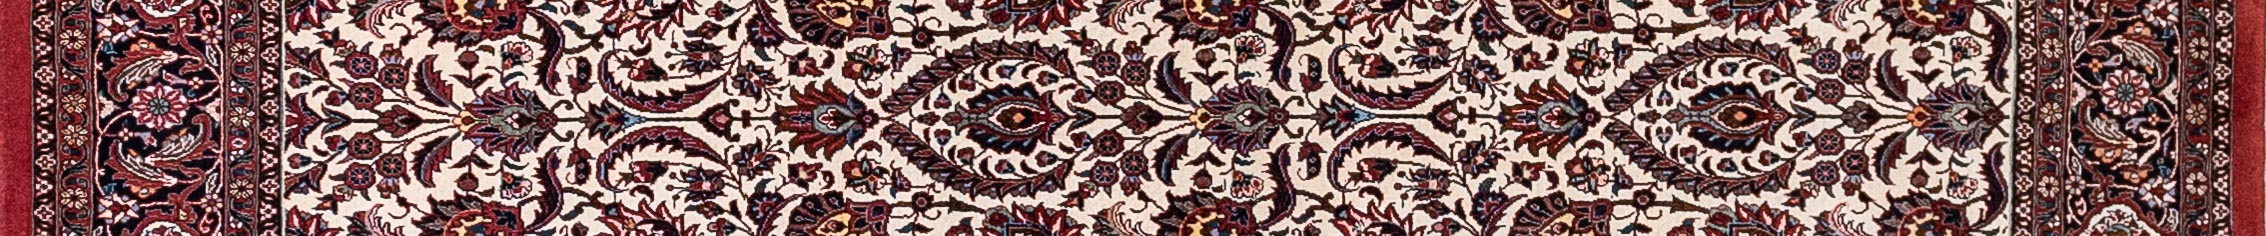 Bidjar Persian Carpet Rug N1Carpet Canada Montreal Tapis Persan 3950